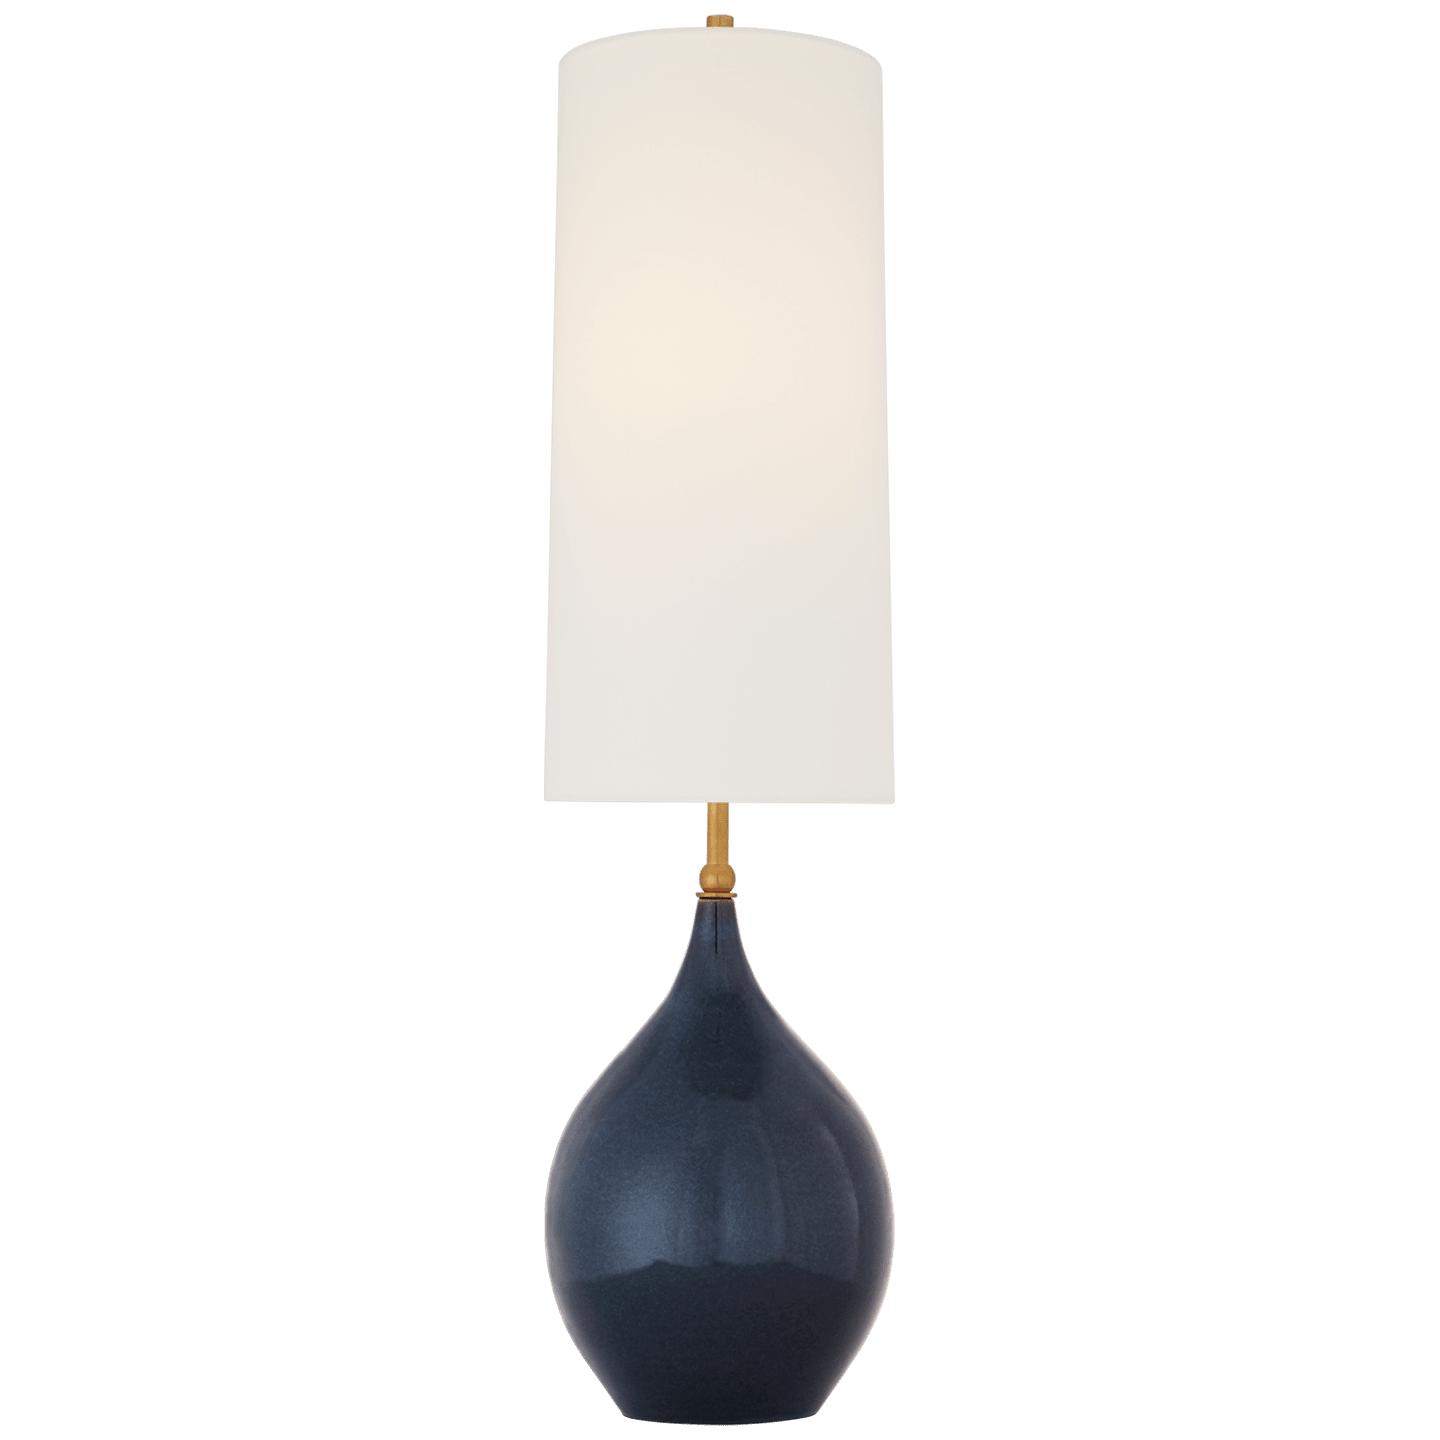 Купить Настольная лампа Loren Large Table Lamp в интернет-магазине roooms.ru